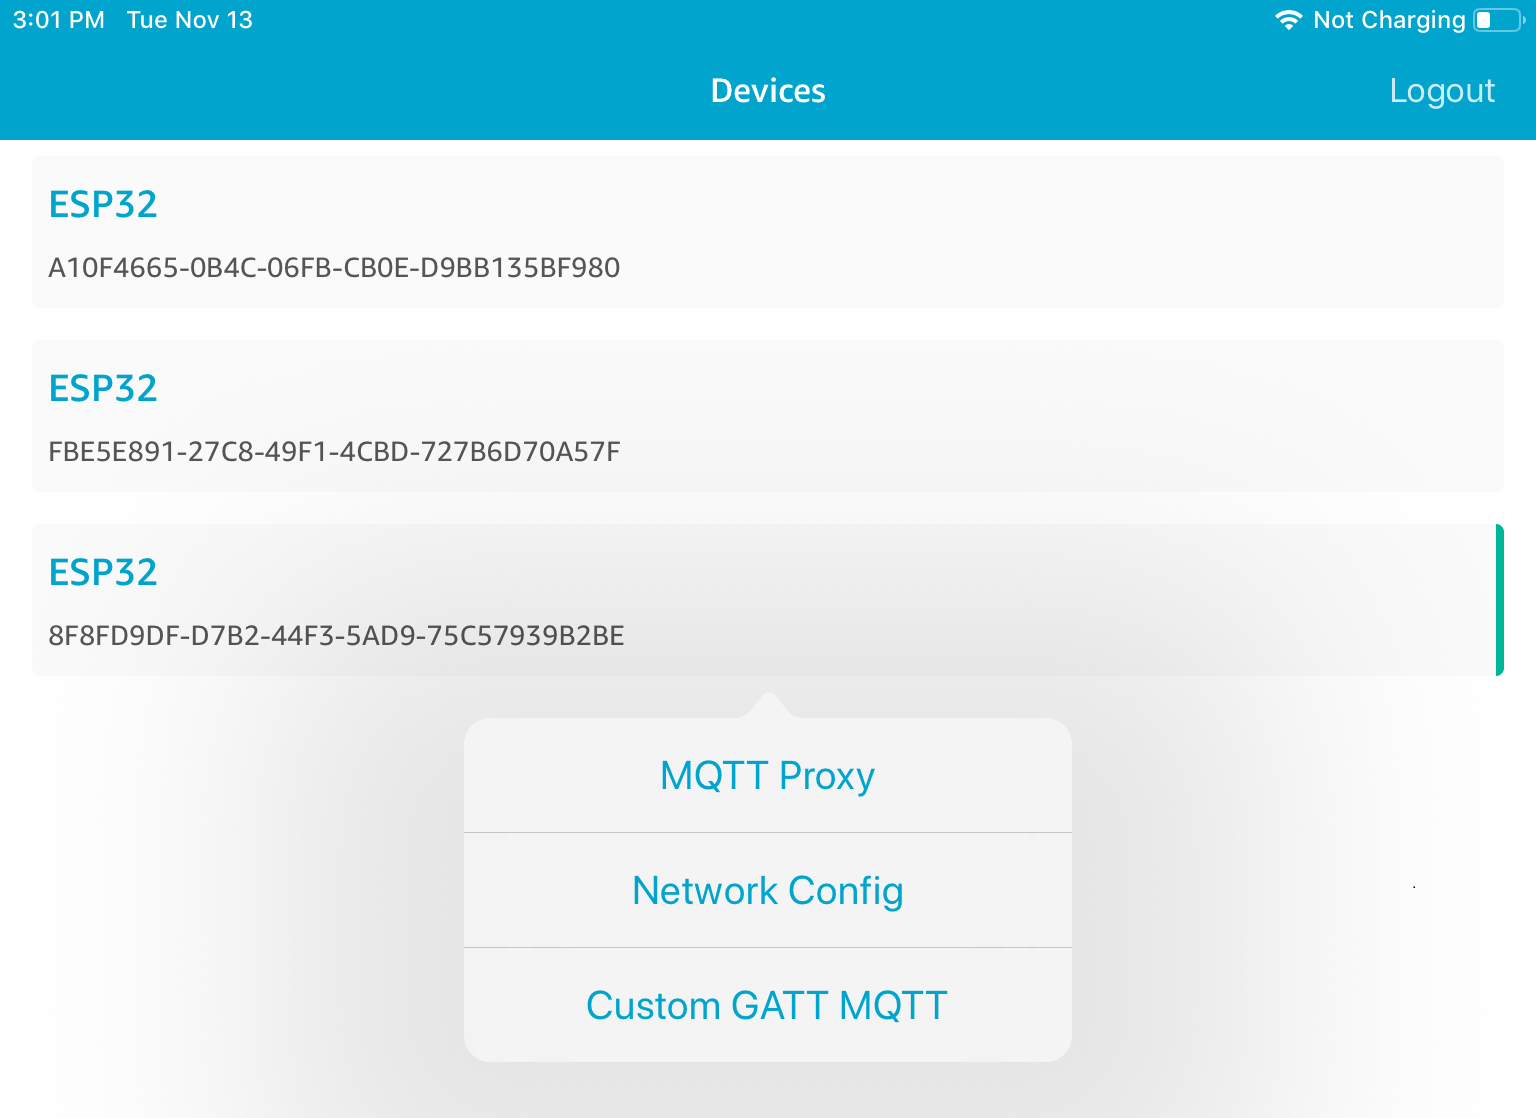 Liste von drei ESP32-Geräte-IDs mit MQTT-Proxy-, Netzwerkkonfiguration- und benutzerdefinierten GATT-MQTT-Optionen unten.